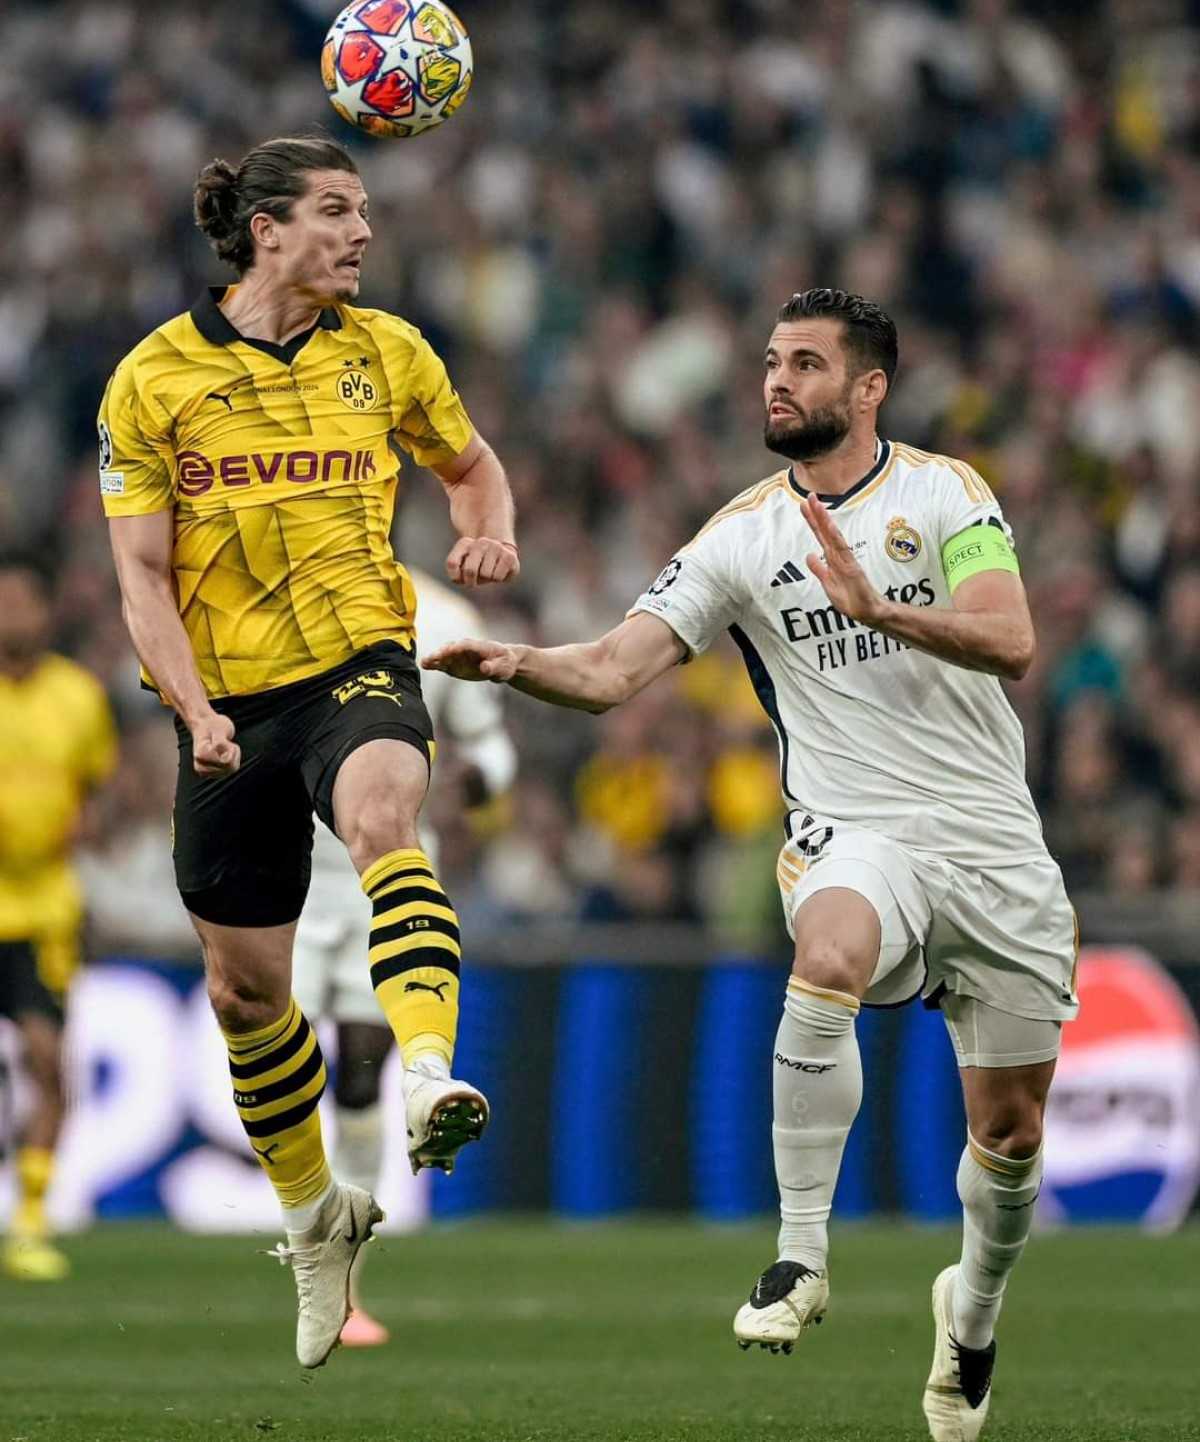 Sabitzer Borussia Dortmund-Real Madrid (0-2): analisi tattica e considerazioni